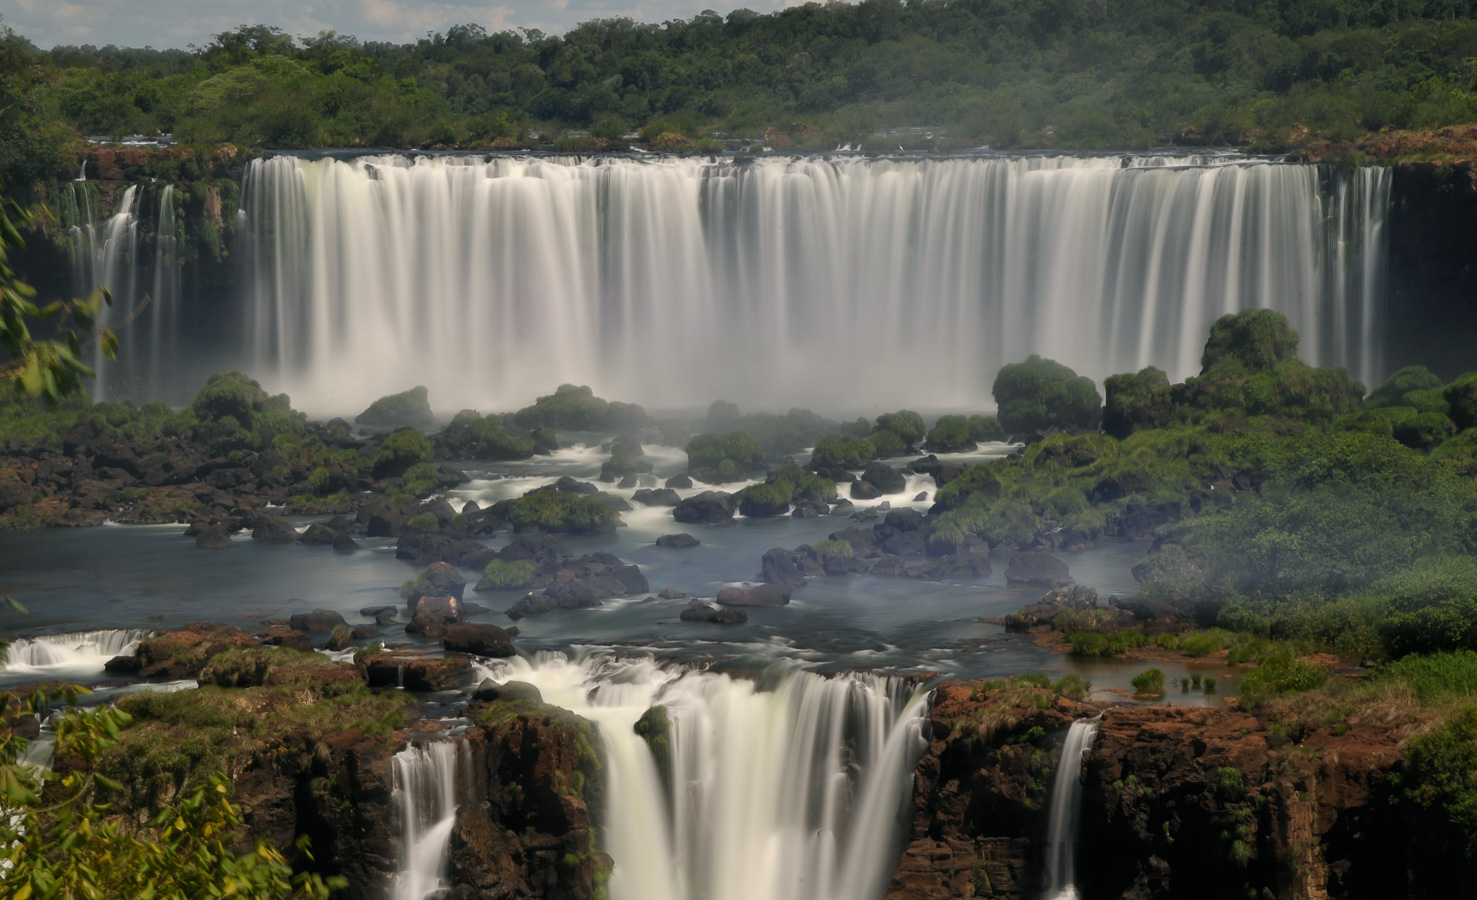 Cataratas del Iguazu [92 mm, 13.0 sec at f / 22, ISO 200]